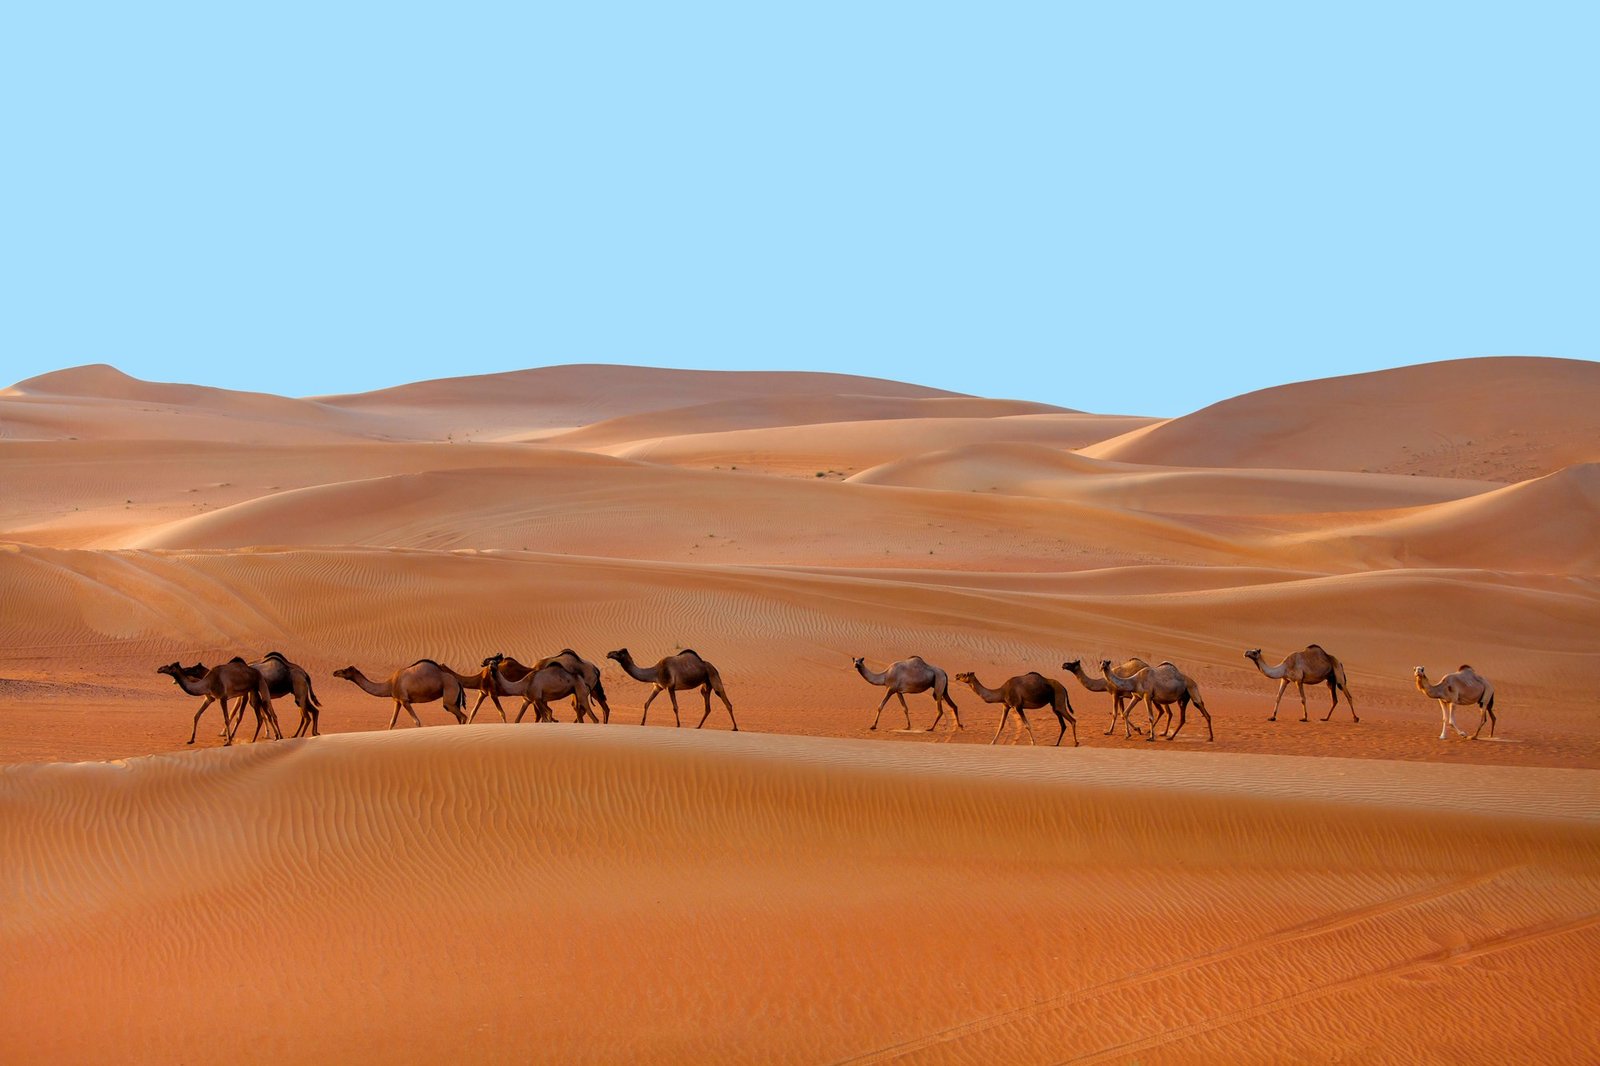 Caravan of Middle Eastern camels walking in the desert in Liwa, Western Region, UAE